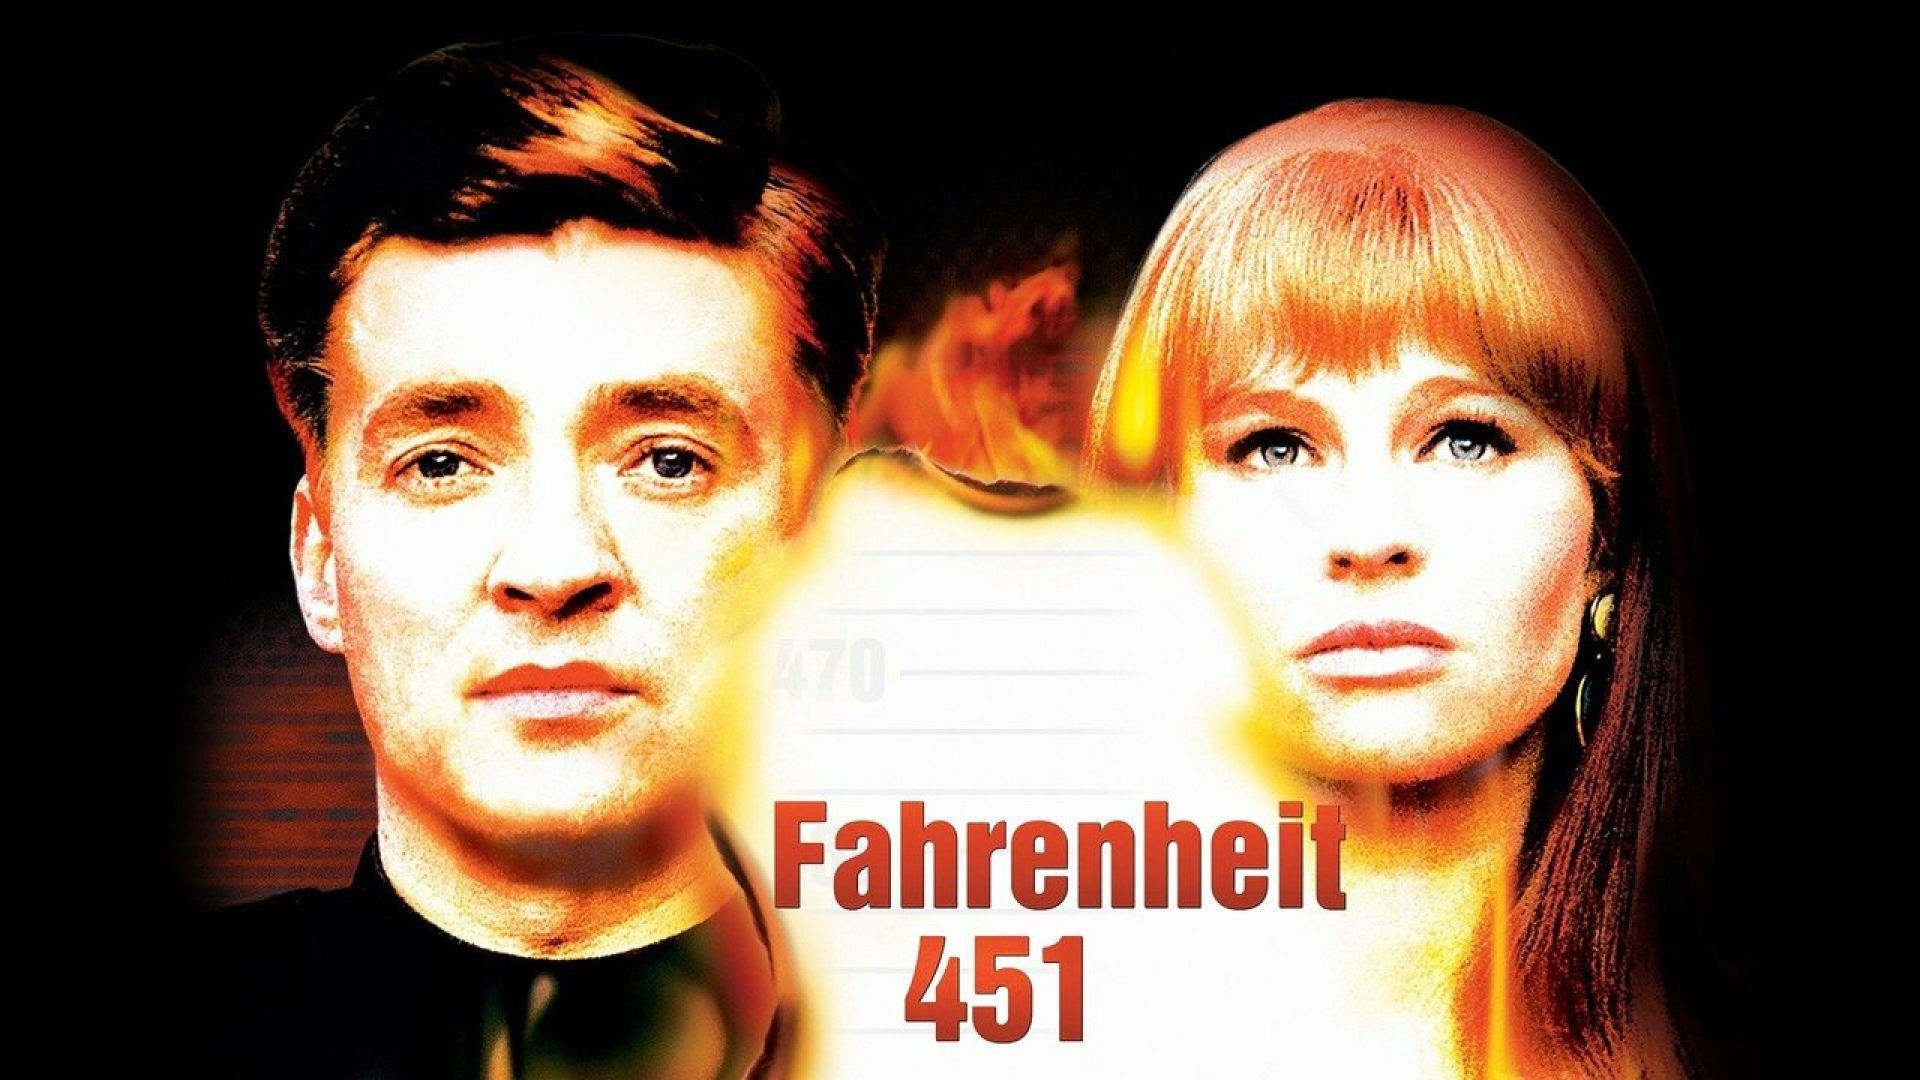 Fahrenheit 451 (1966) cas.